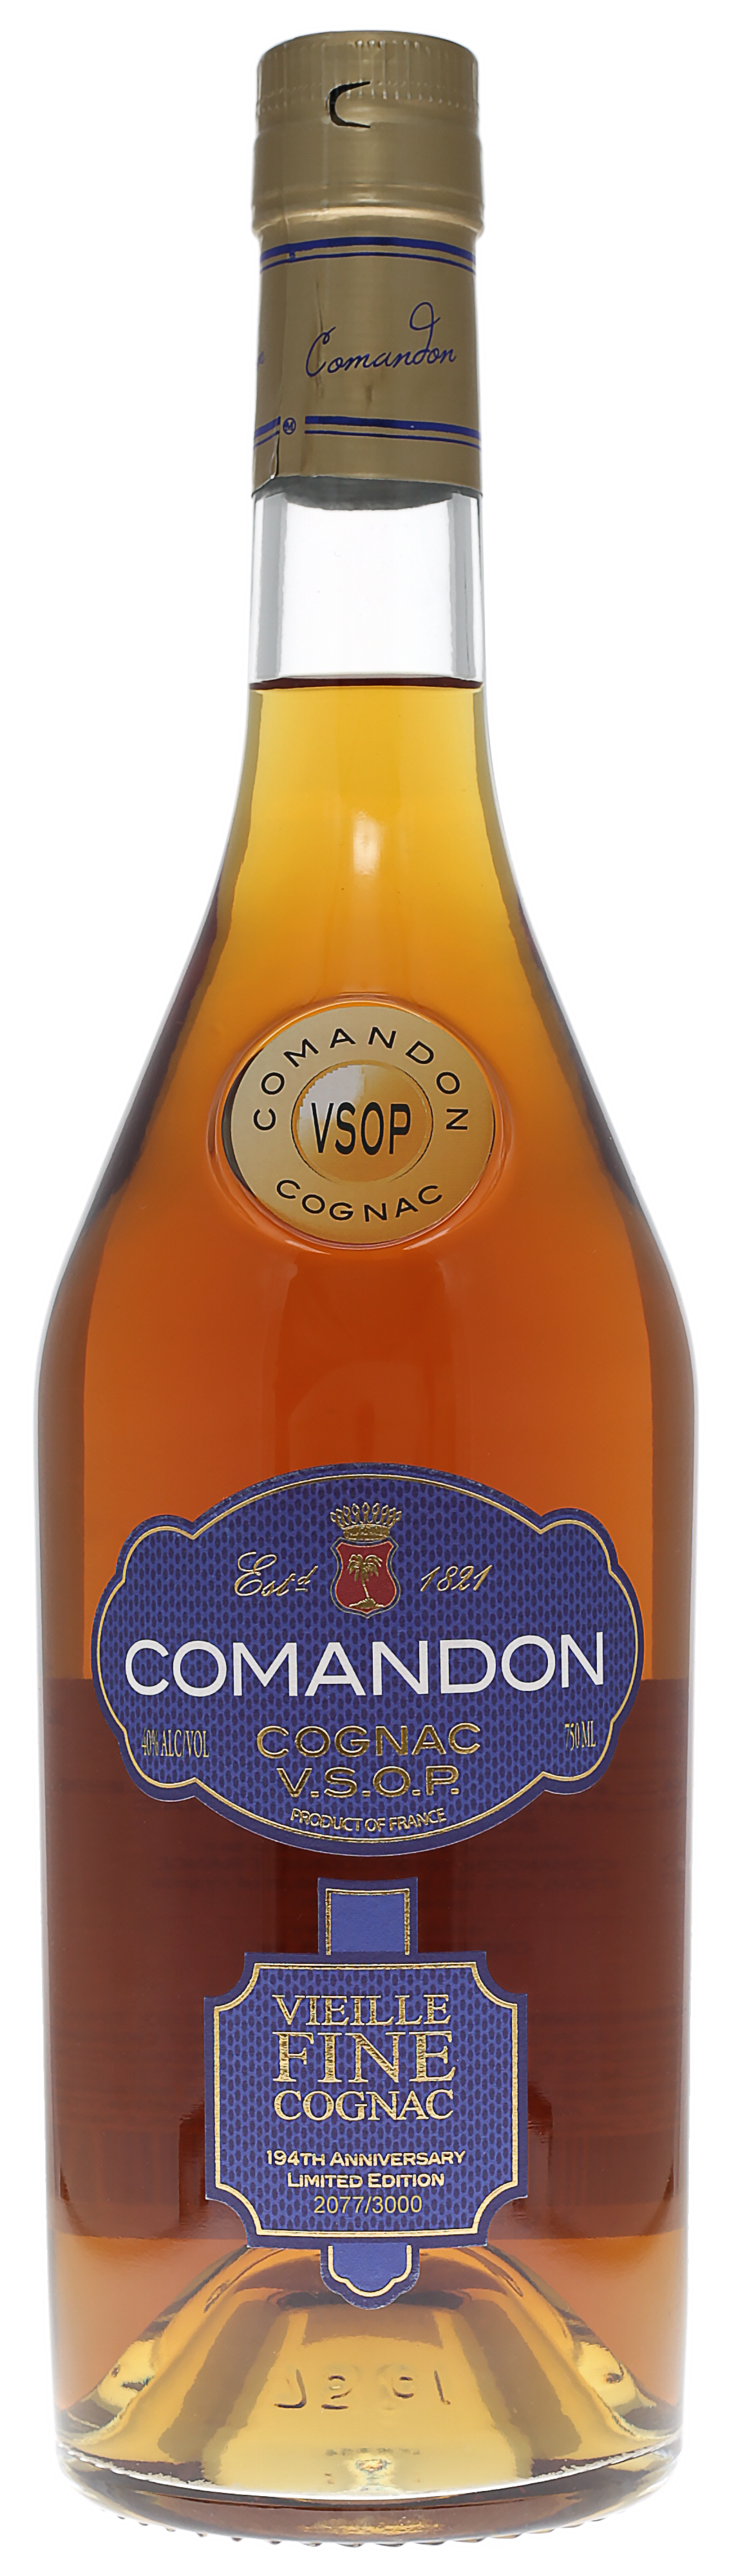 Comandon Cognac VSOP Single Cask